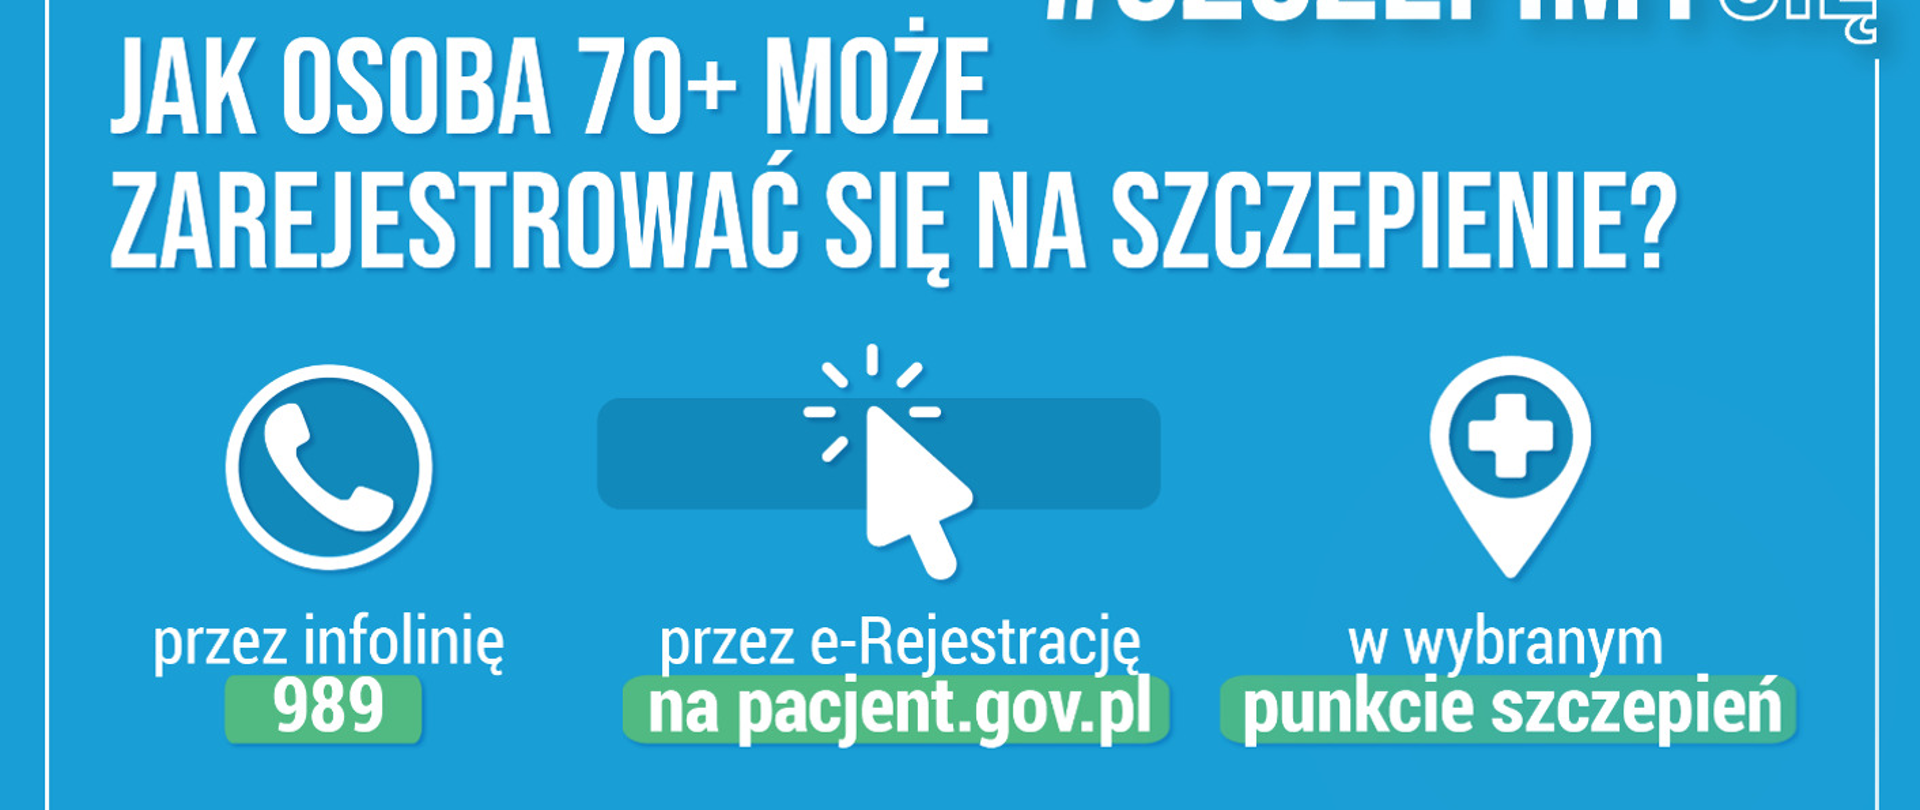 Baner niebieski z tekstem Jak osoba 70+ może zarejestrować się na szczepienie. Infolinia 989, na pacjent gov.pl oraz w wybranym punkcie szczepień